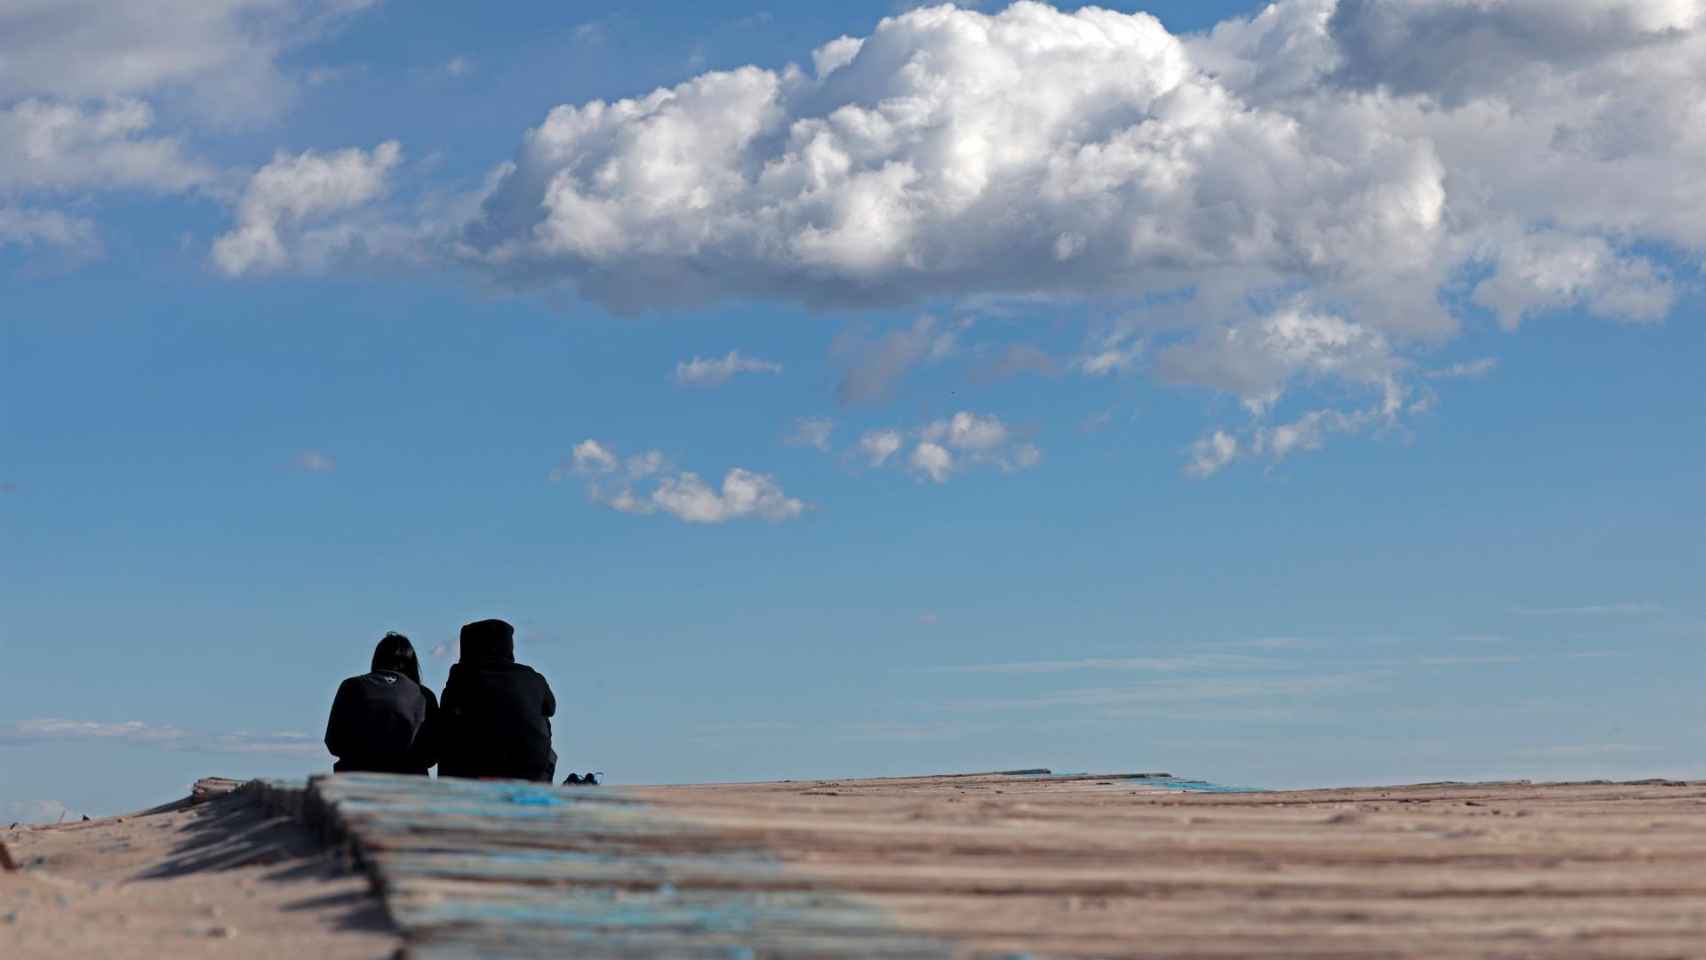 Dos jóvenes en una playa valenciana el pasado puente de la Constitución.